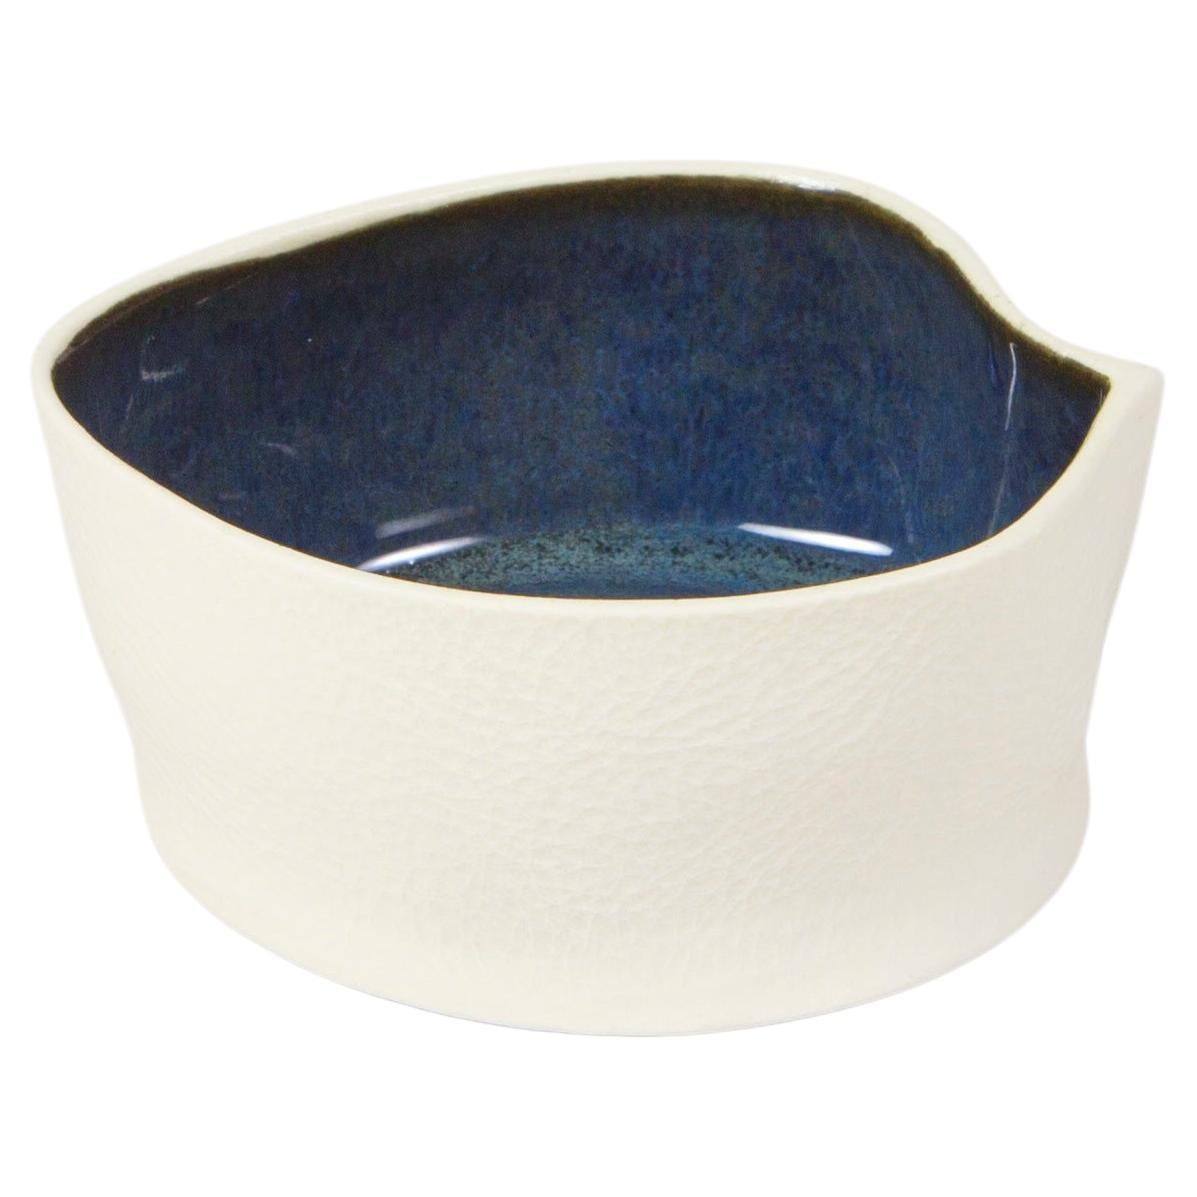 Petit plat Kawa en céramique blanc et bleu foncé, bol Catchall en porcelaine texturé